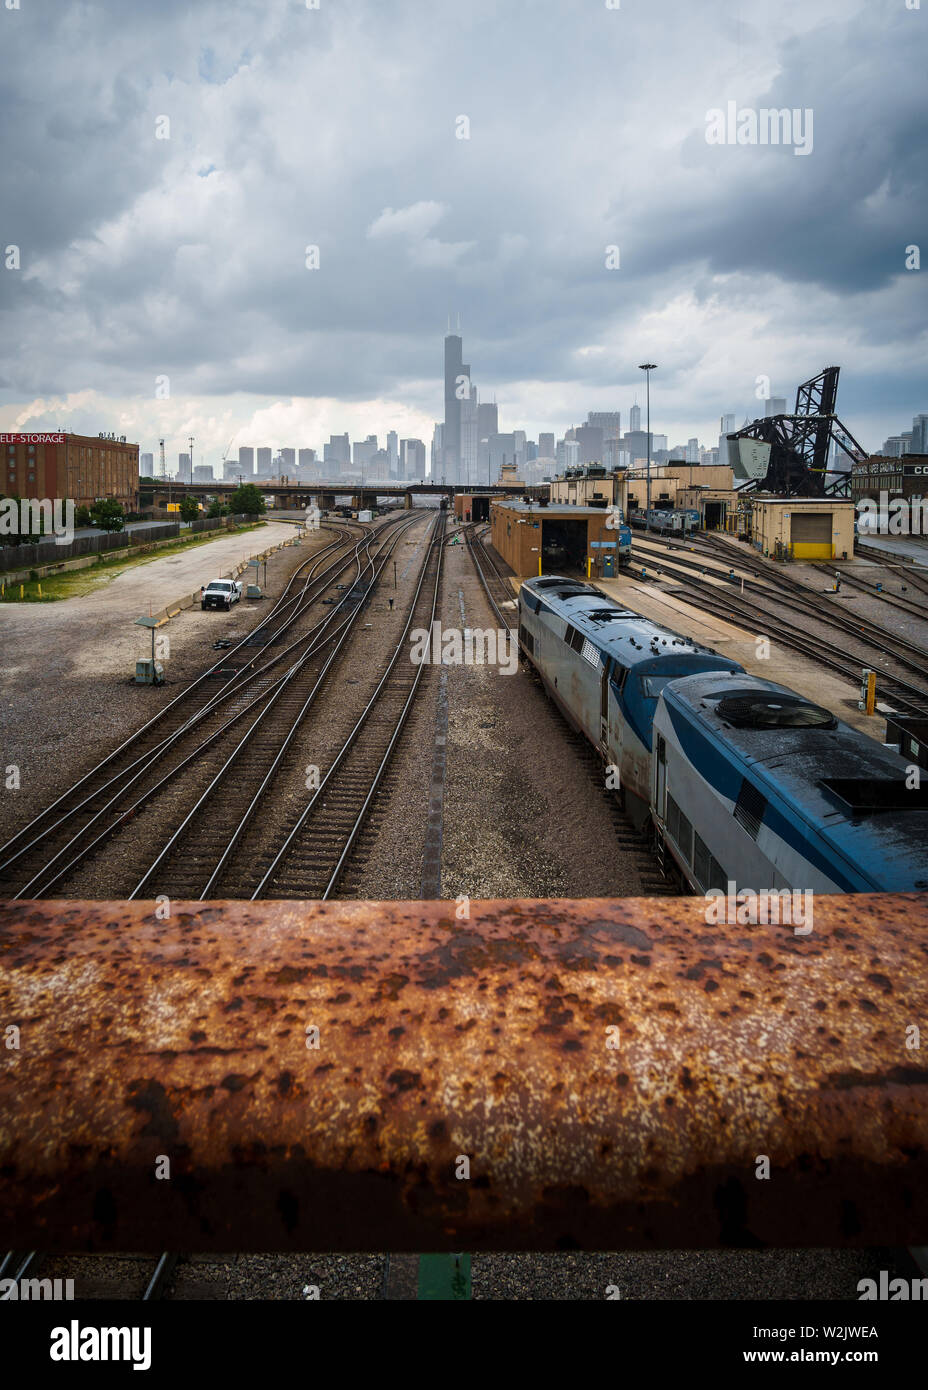 Ein düsterer Blick auf die Skyline von Chicago Stockfoto